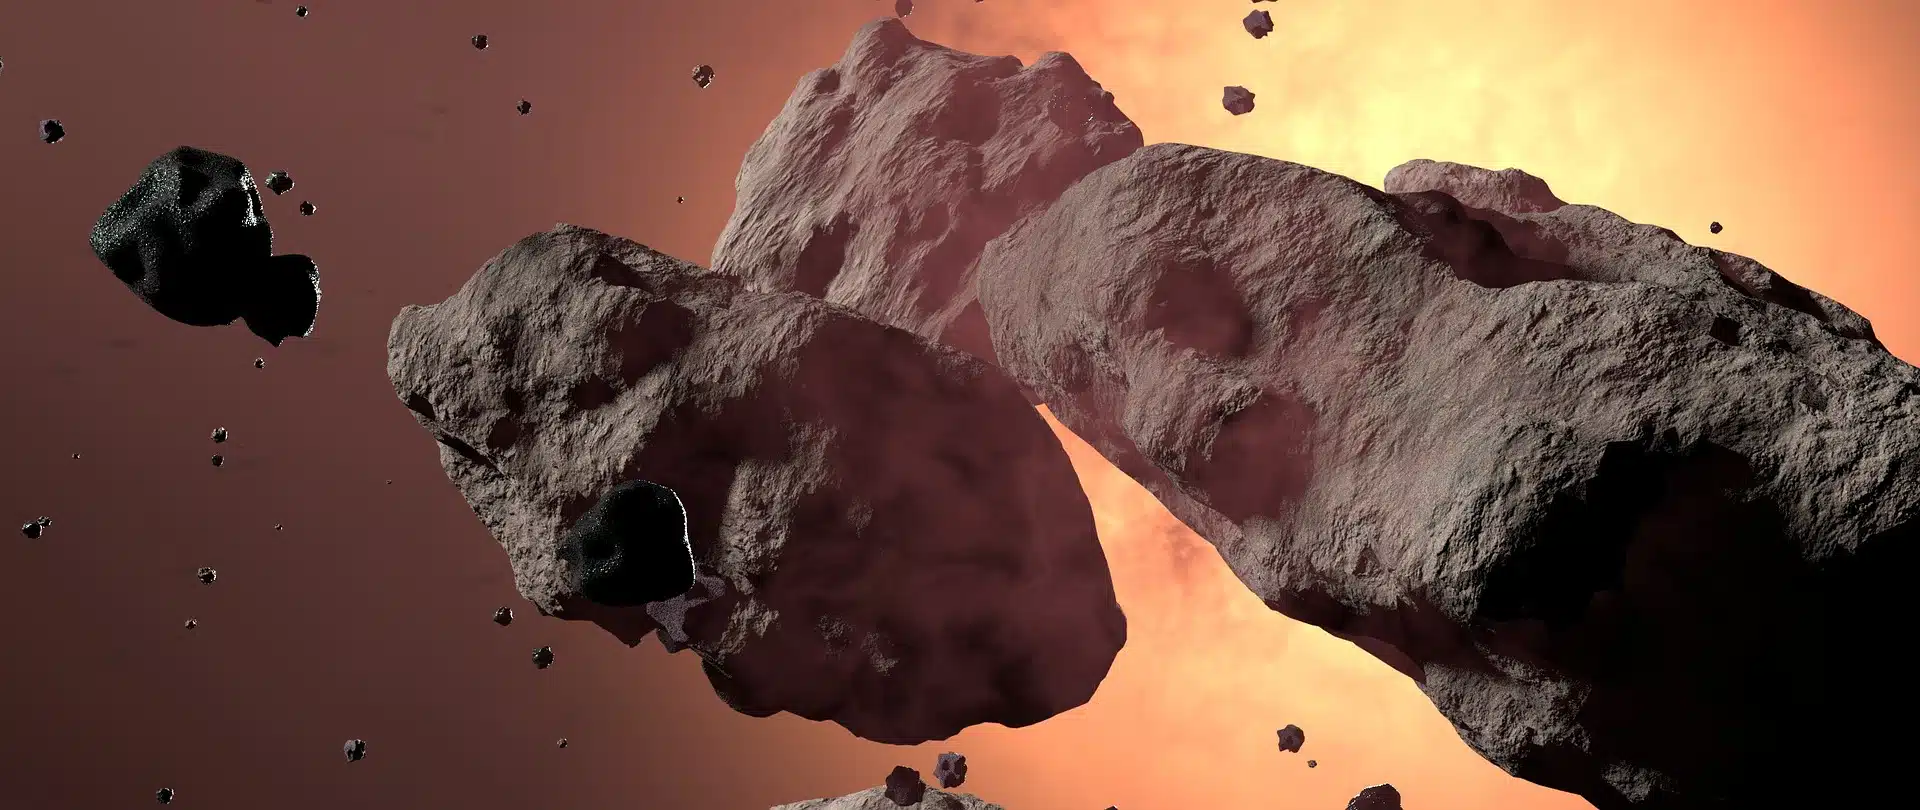 Asteroide vicino alla terra 5 giugno 2020: quando passa e distanza